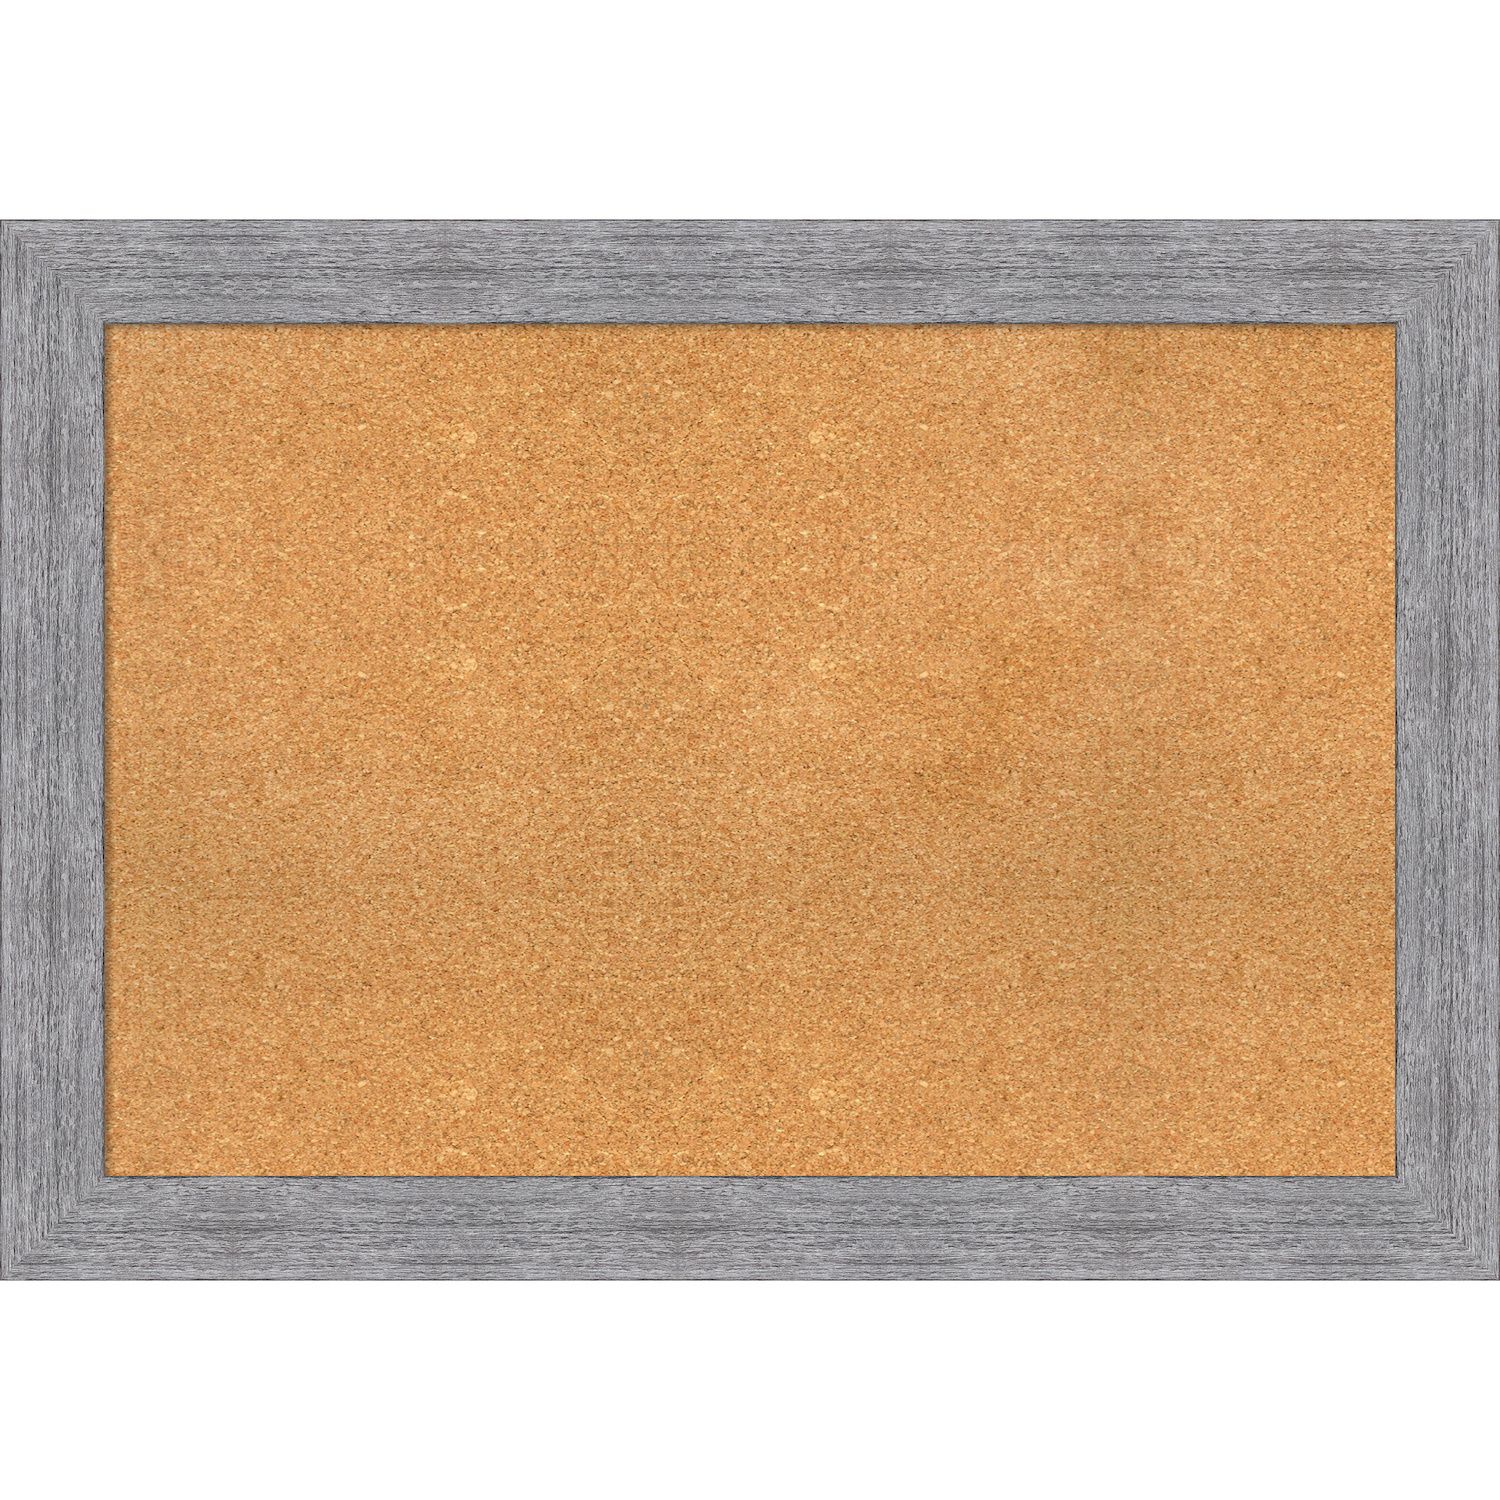 Juvale 4-Pack Cork Bulletin Board, 1/4 Inch Natural Cork Tile Boards, 12x12  in